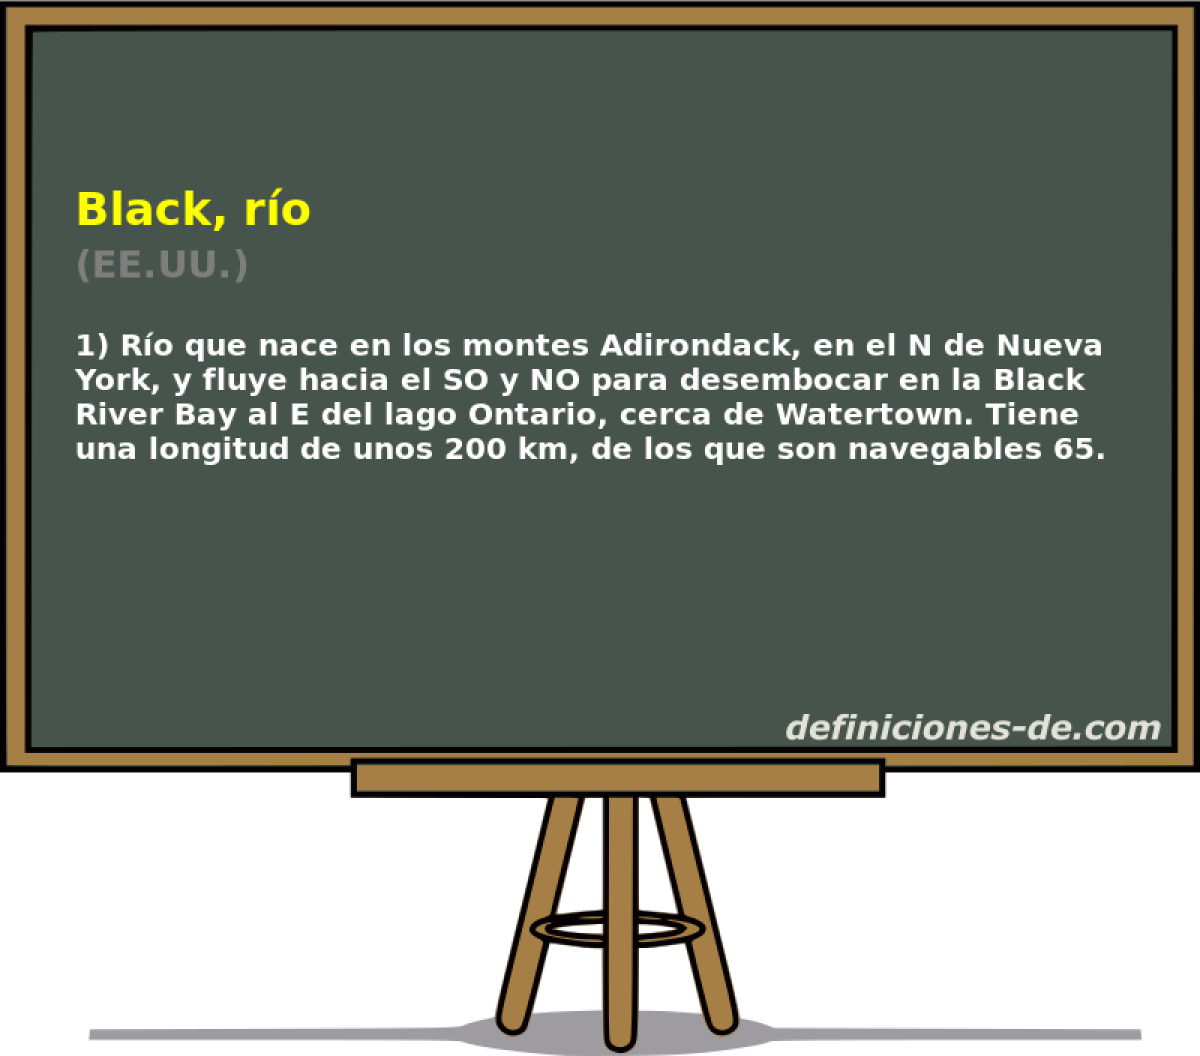 Black, ro (EE.UU.)